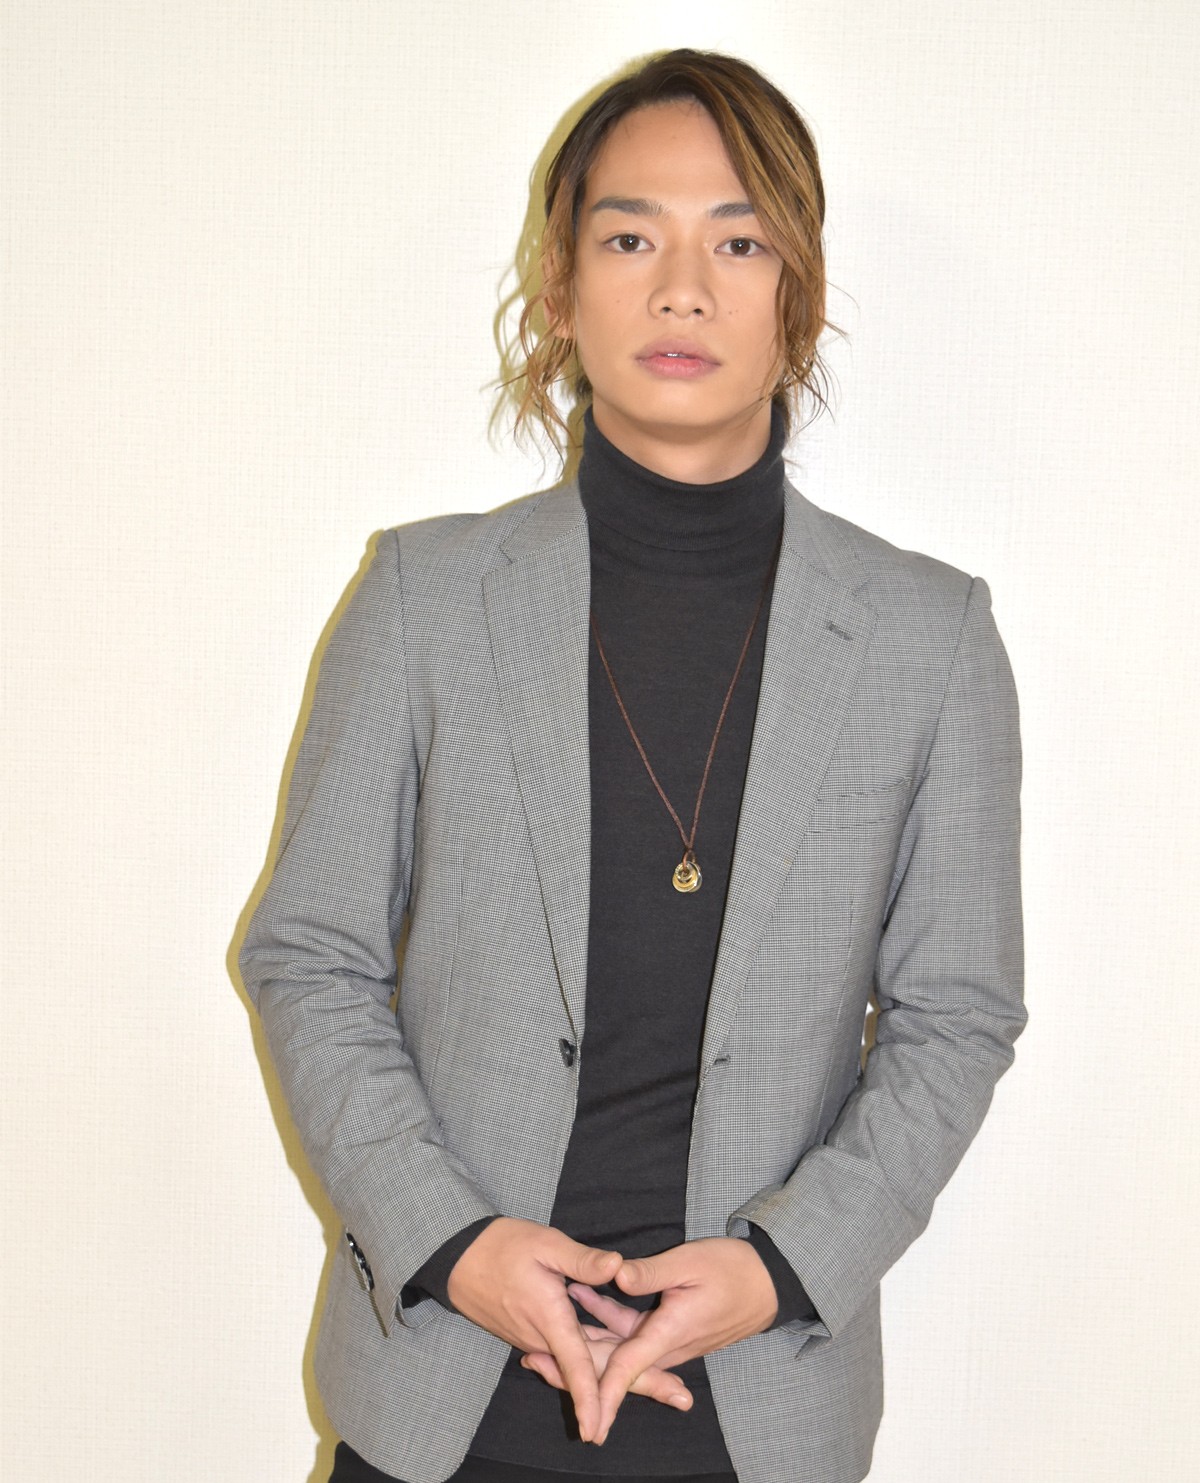 池田純矢、若きエンターテイナーが魅せる舞台 “演劇とは娯楽であるべき”理念に迫る